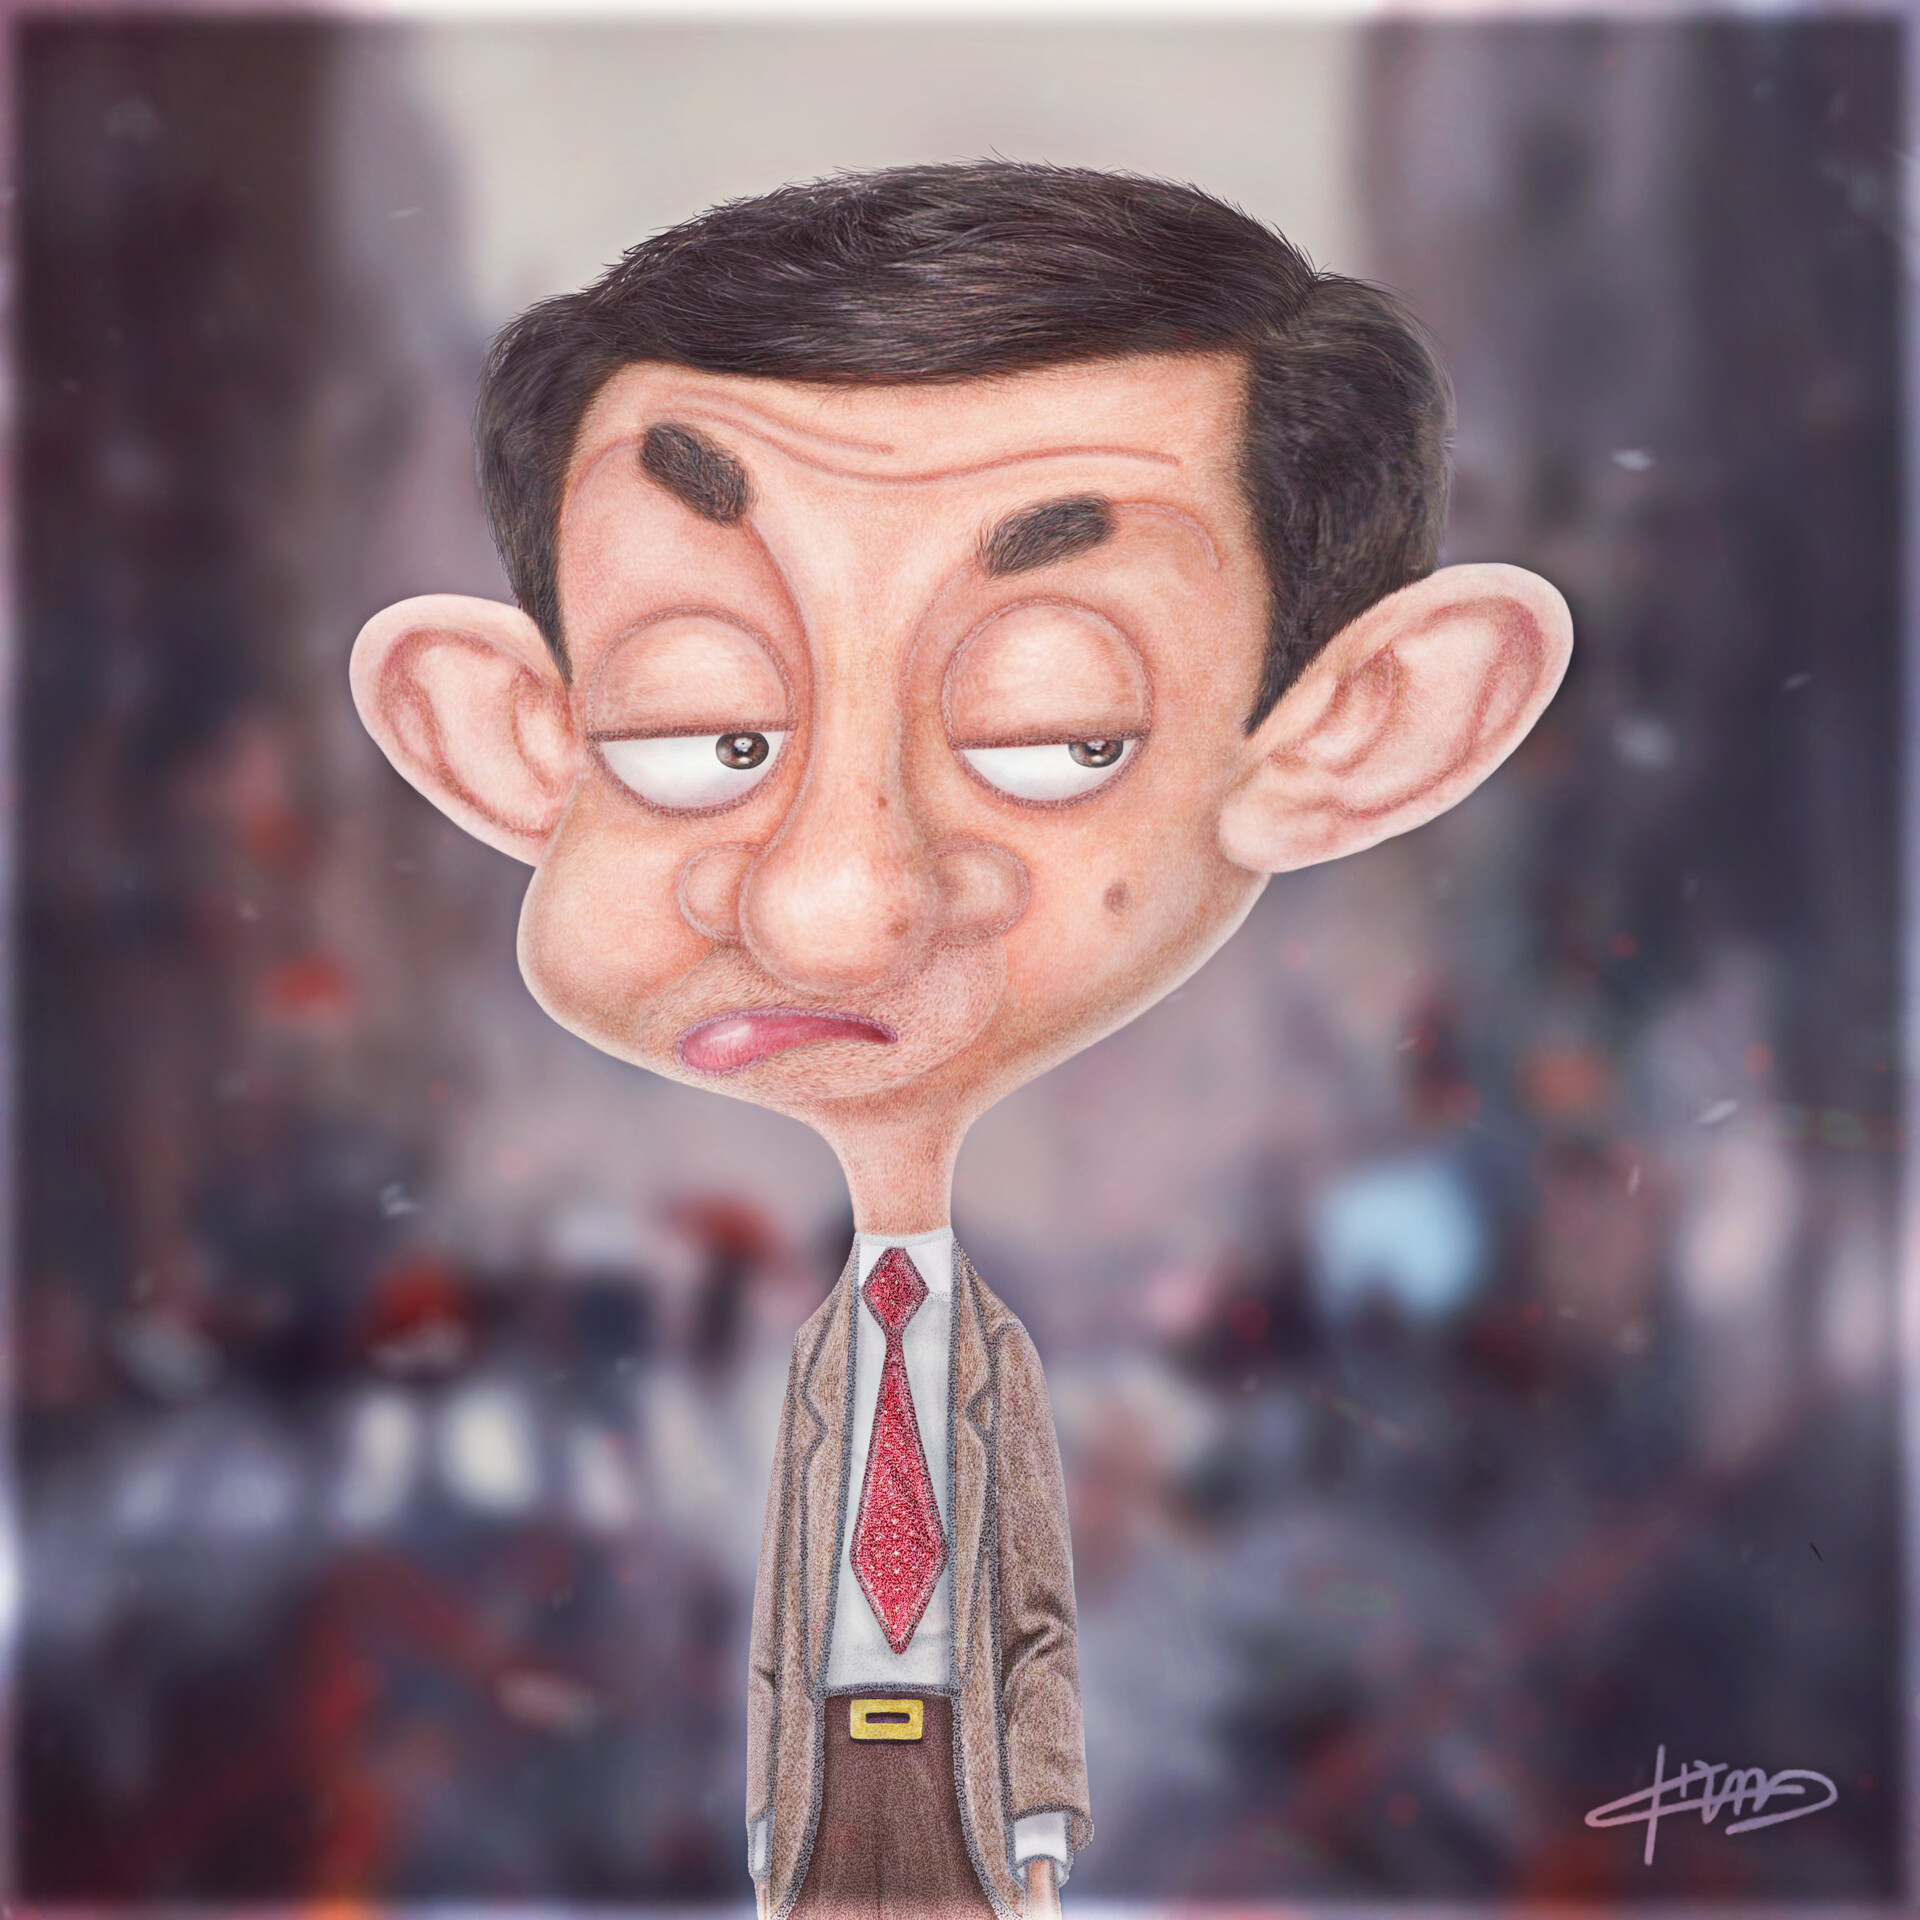 ArtStation - Artwork Mr Bean Cartoon